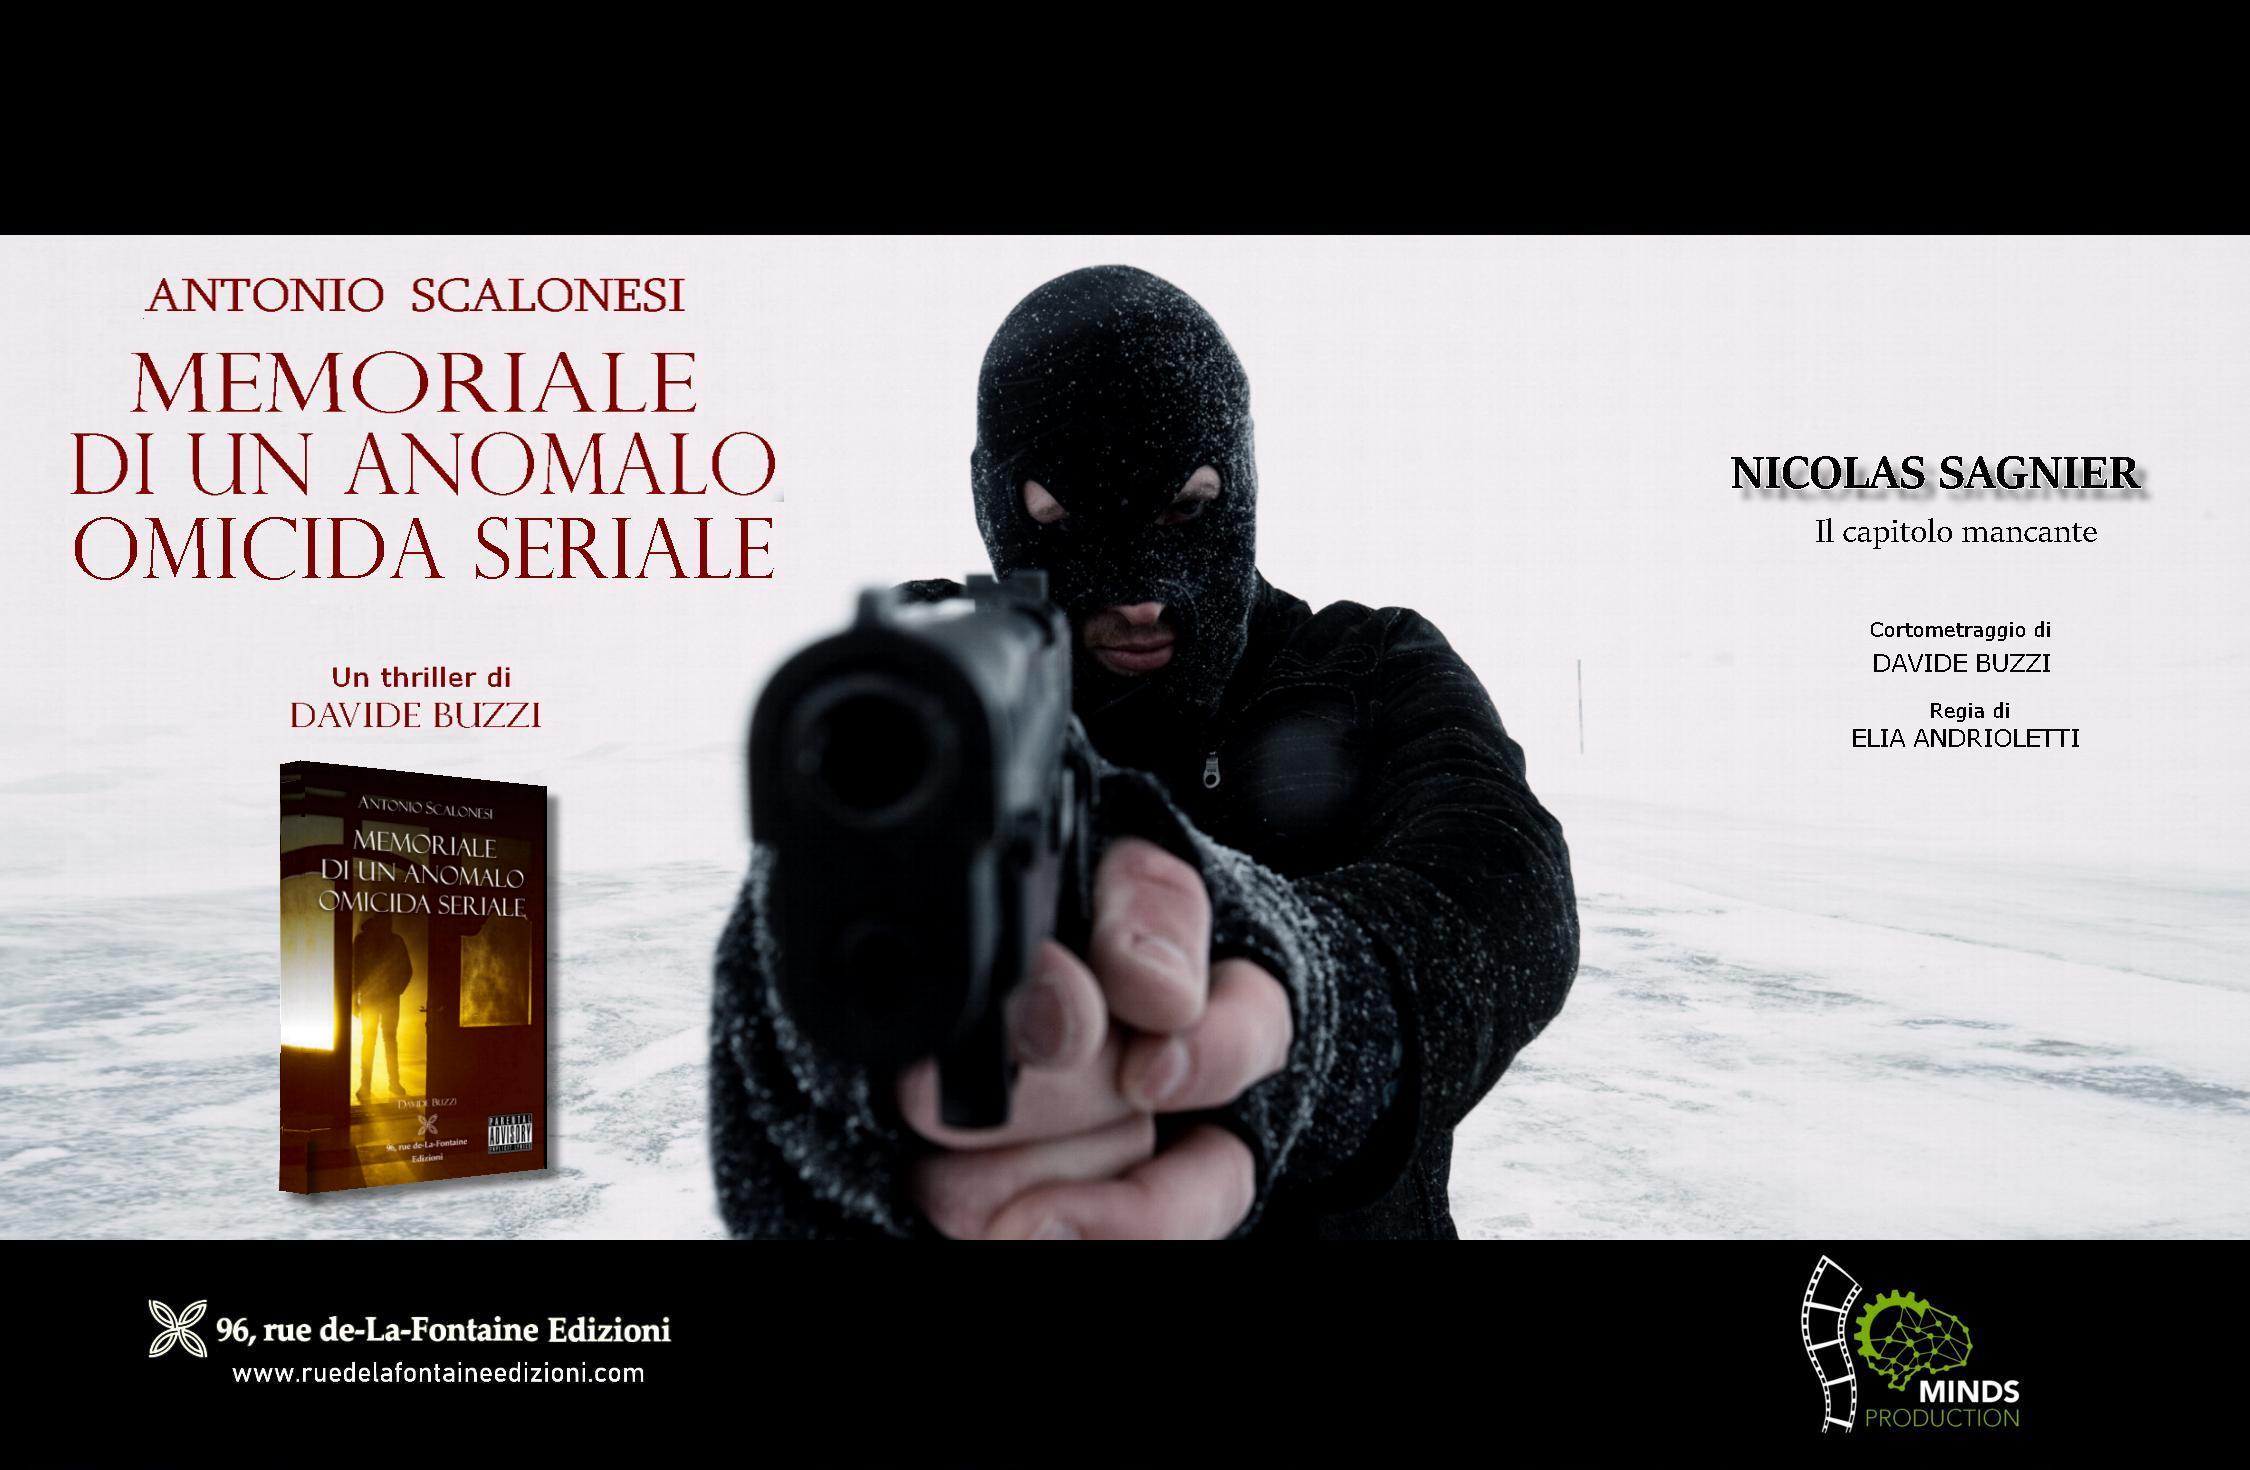 IL MEMORIALE DI ANTONIO SCALONESI finalista al Booktrailer Film Festival 2021 di Milano 